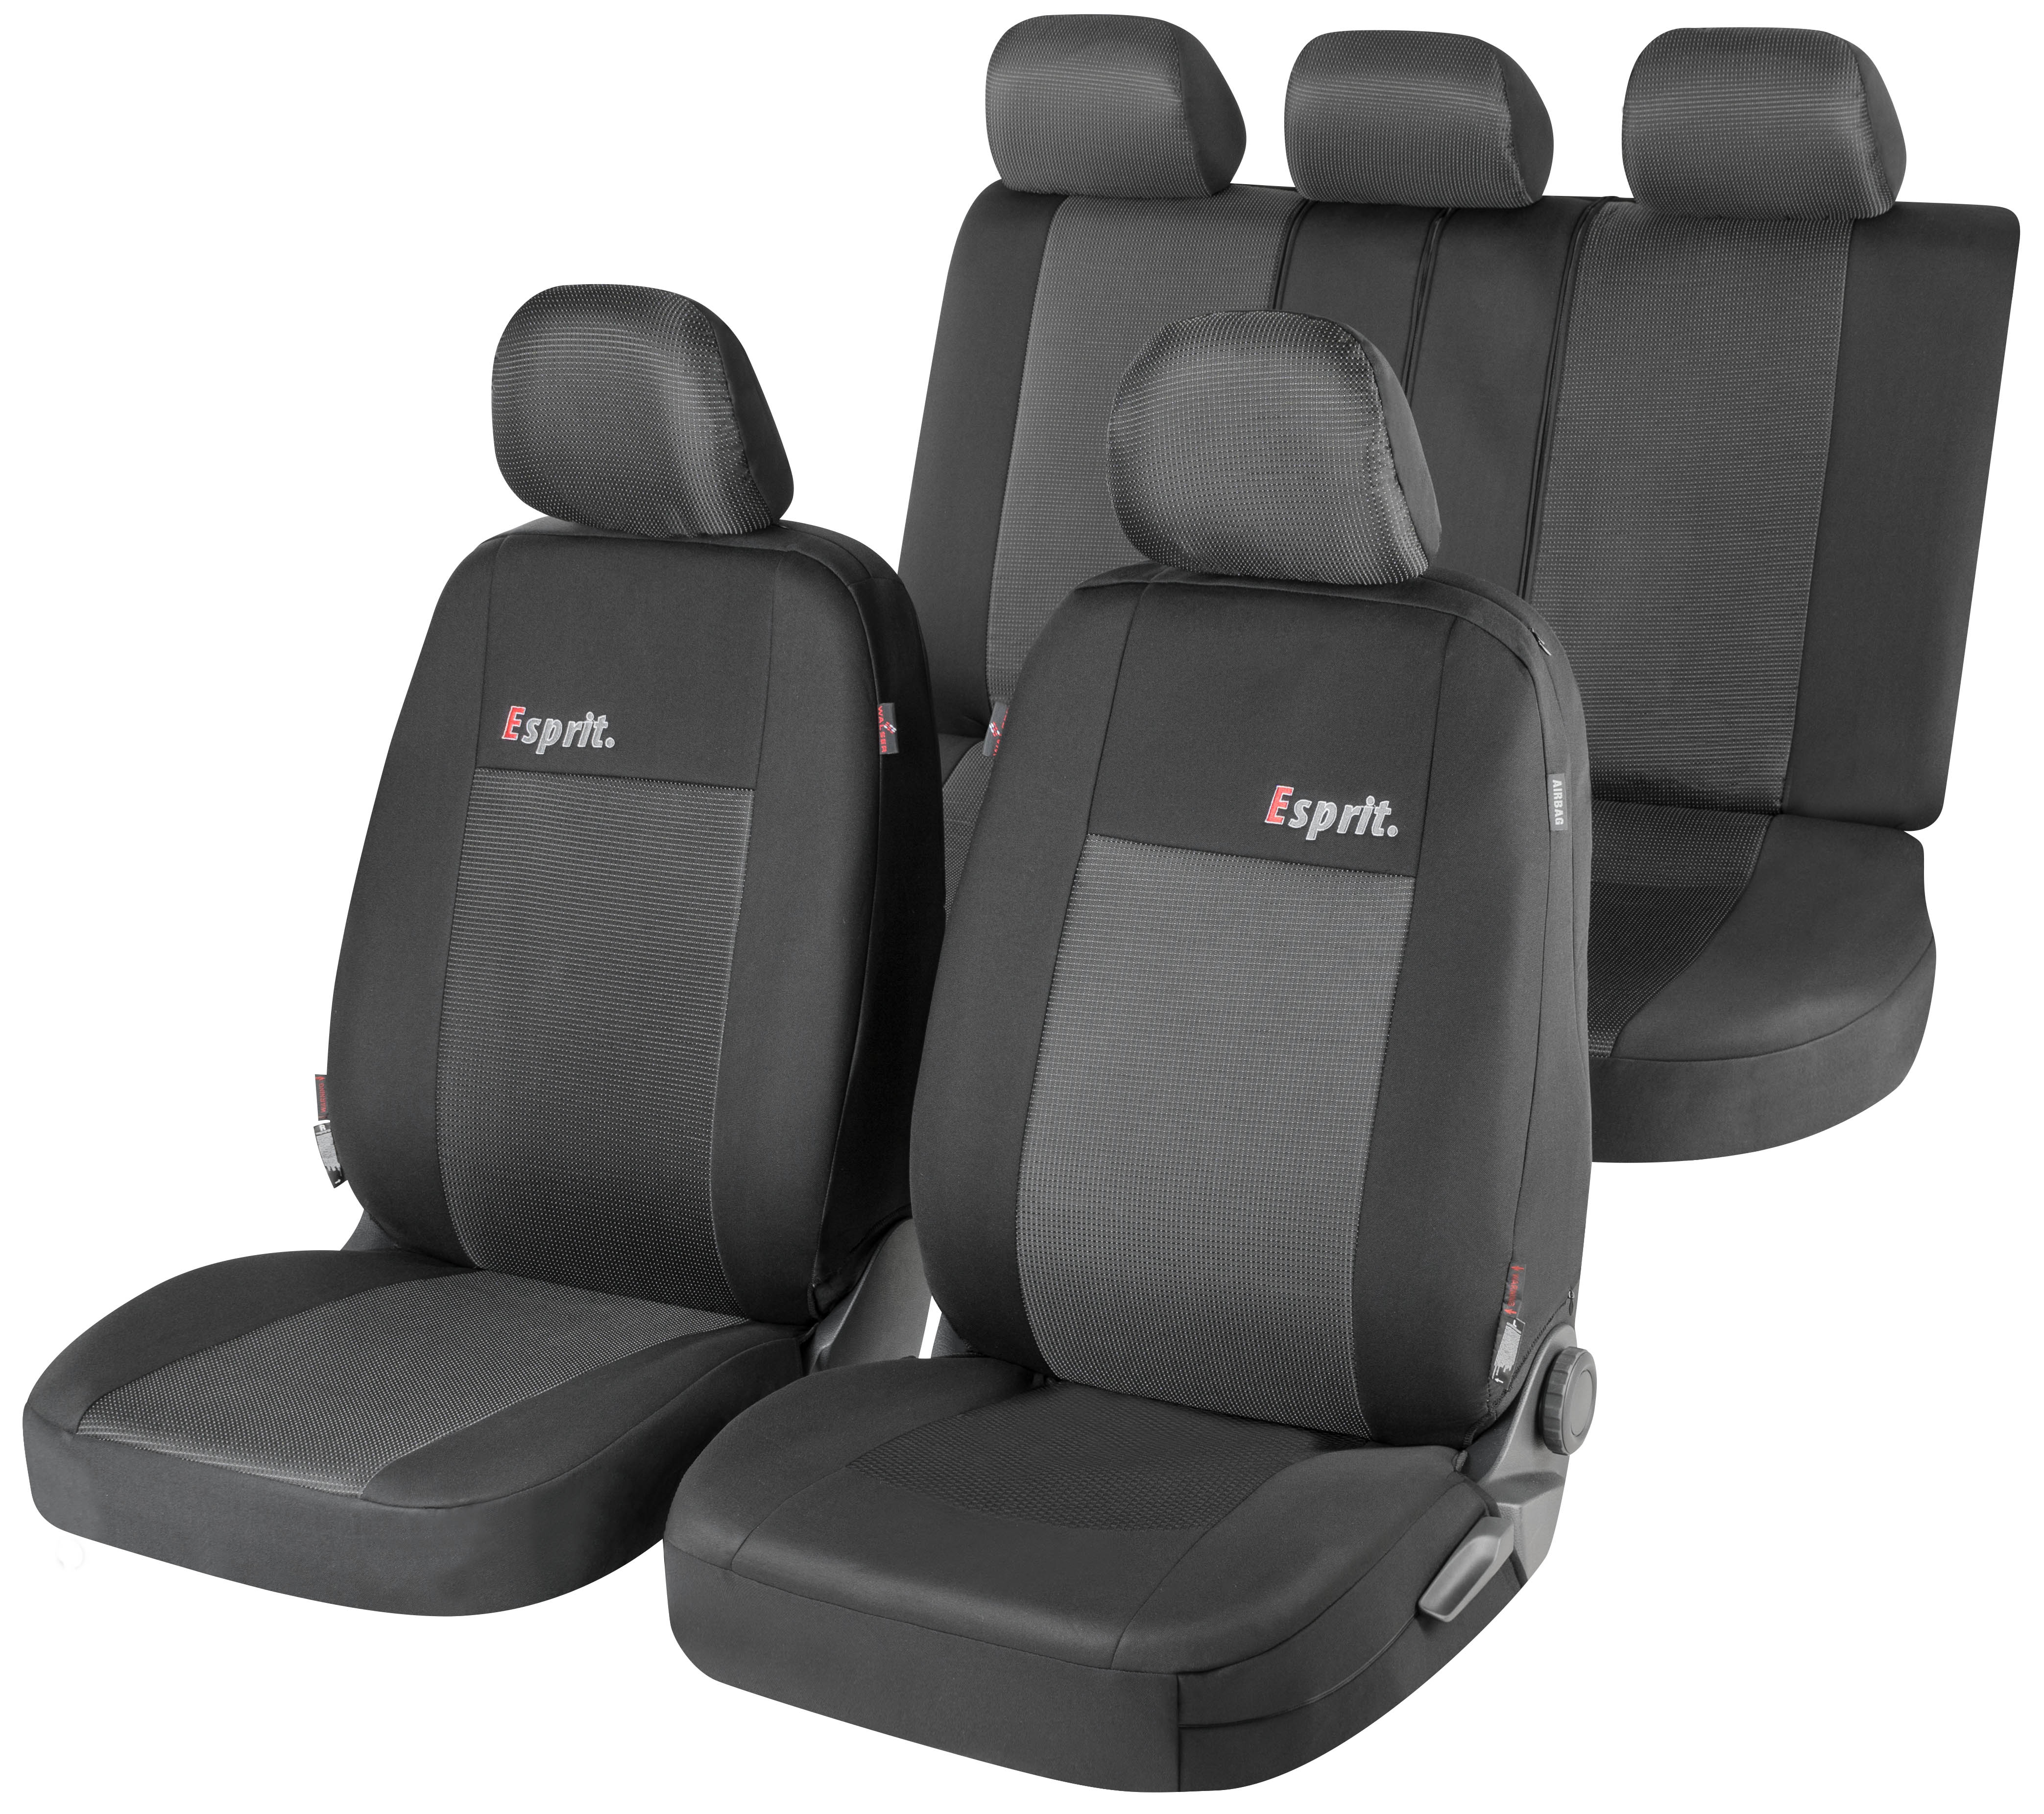 LAXTO Auto sitzbezüge für Hyundai Staria,Leder sitzbezug Sets Komplettset  5-Sitze sitzschoner Wasserdicht Schonbezüge Innenraum Zubehör,Coffee